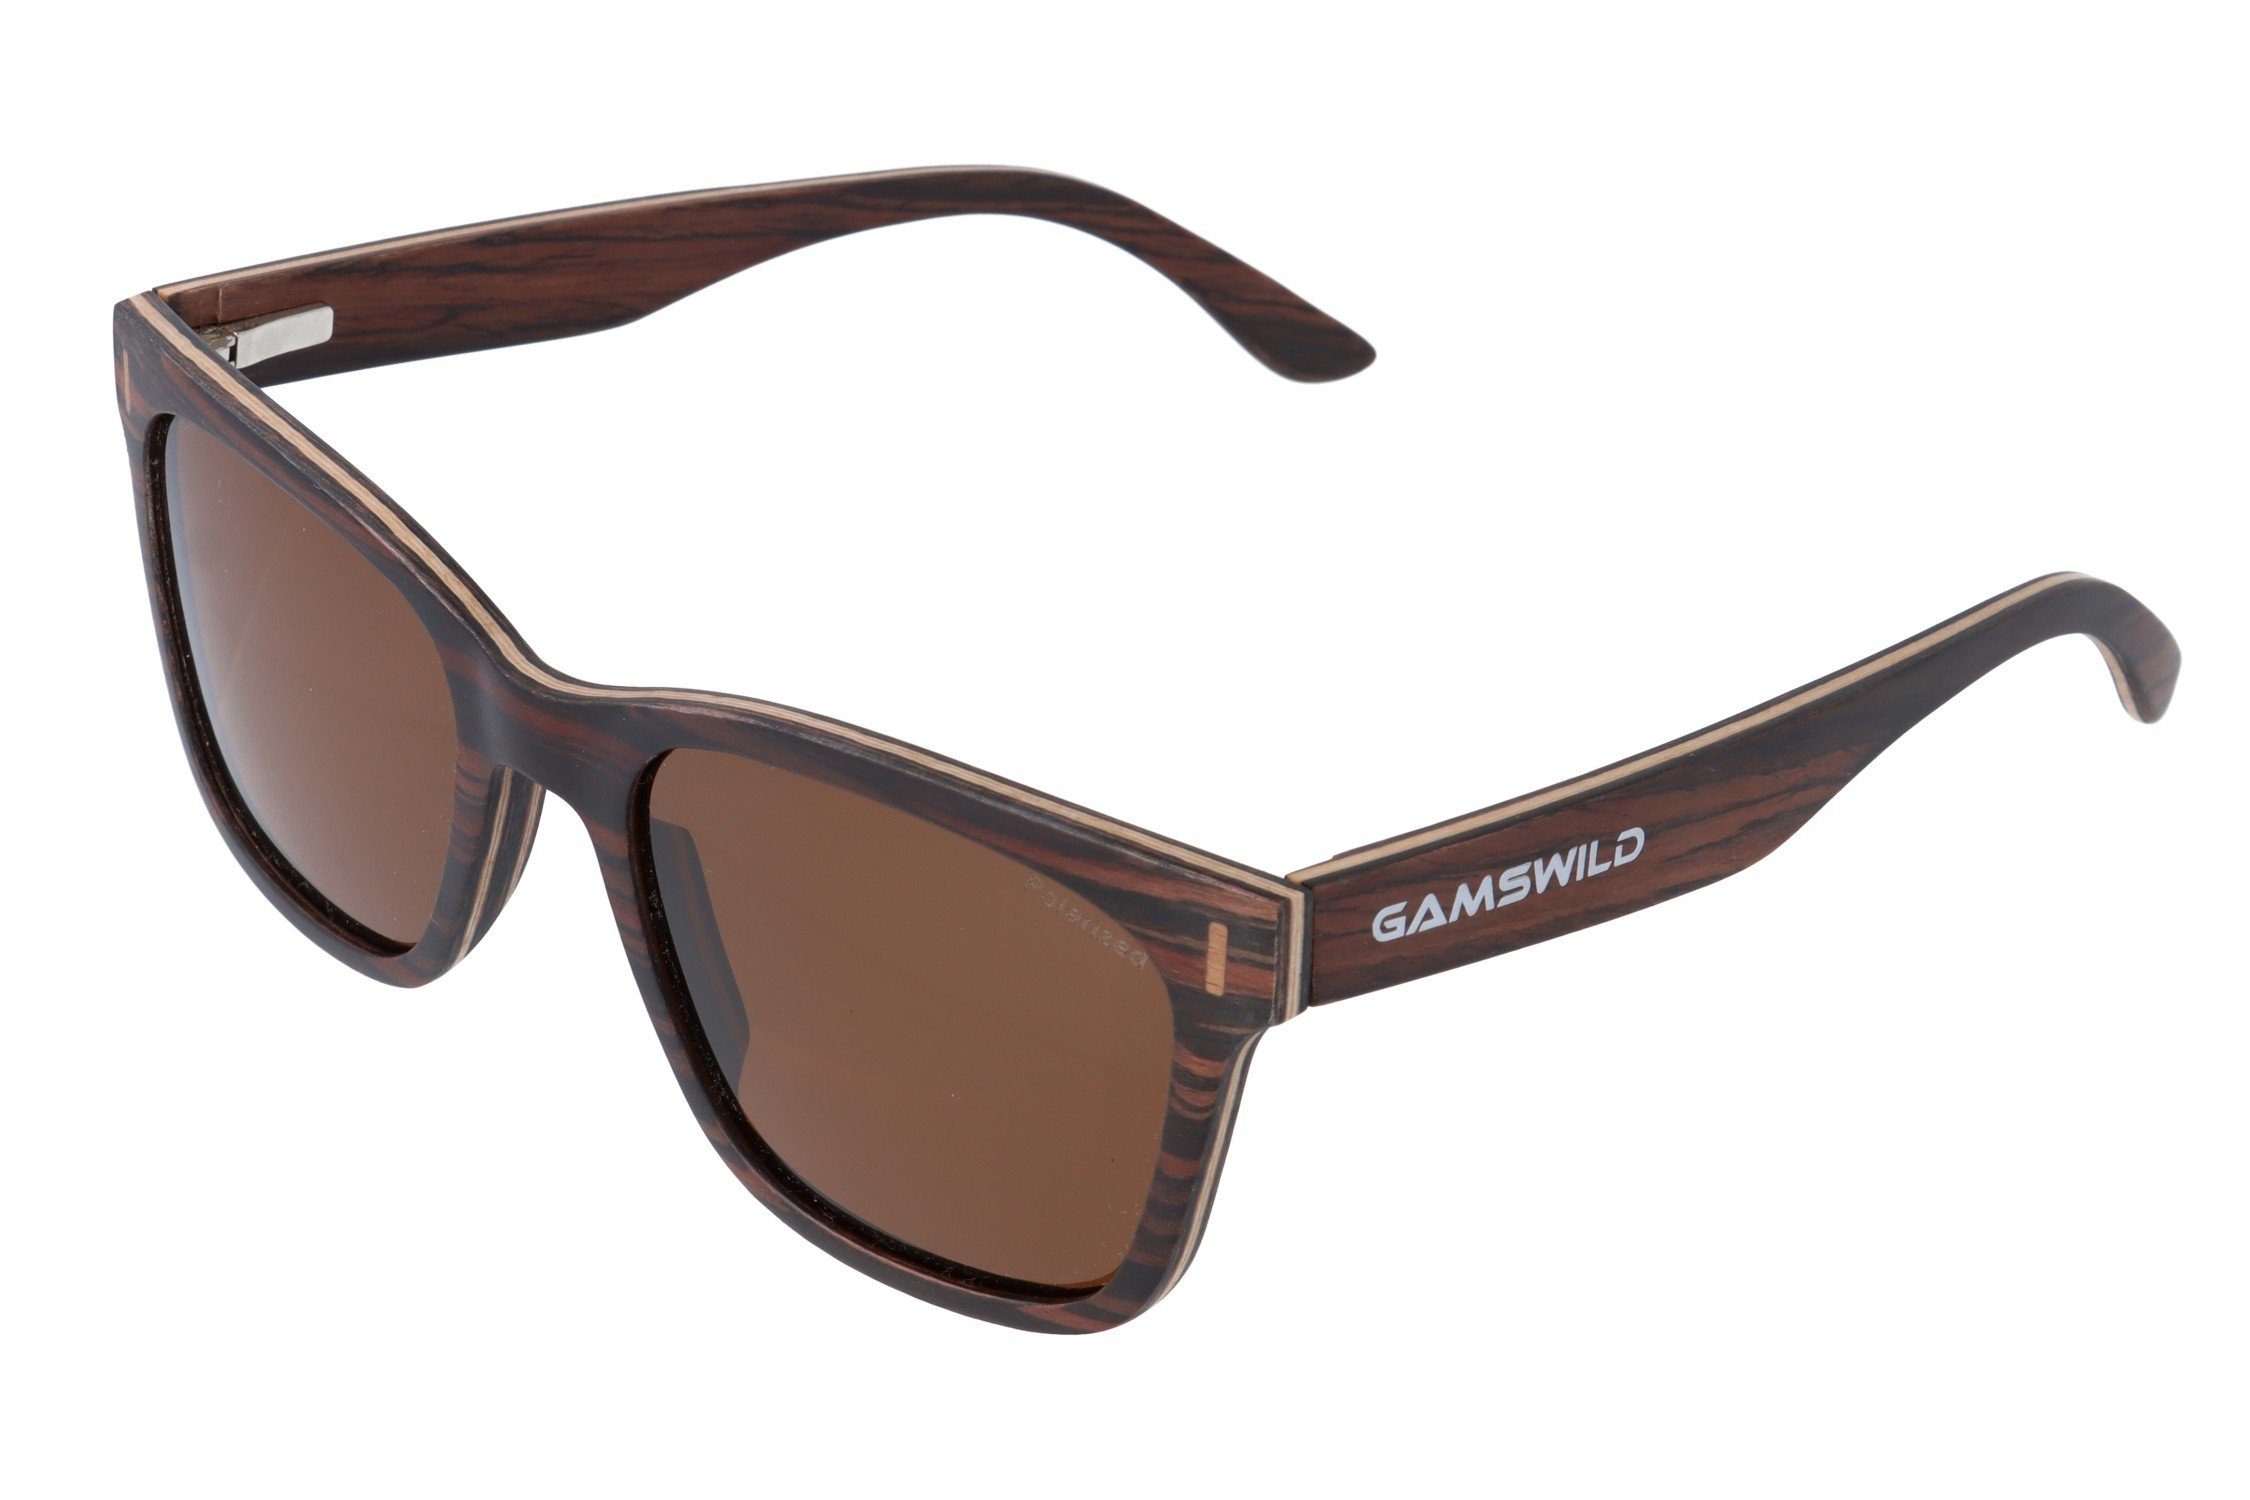 Gamswild Sonnenbrille WM0011 GAMSSTYLE Holzbrille Damen Herren Unisex, polarisierte Gläser in braun, grau, blau & G15 Glas braun